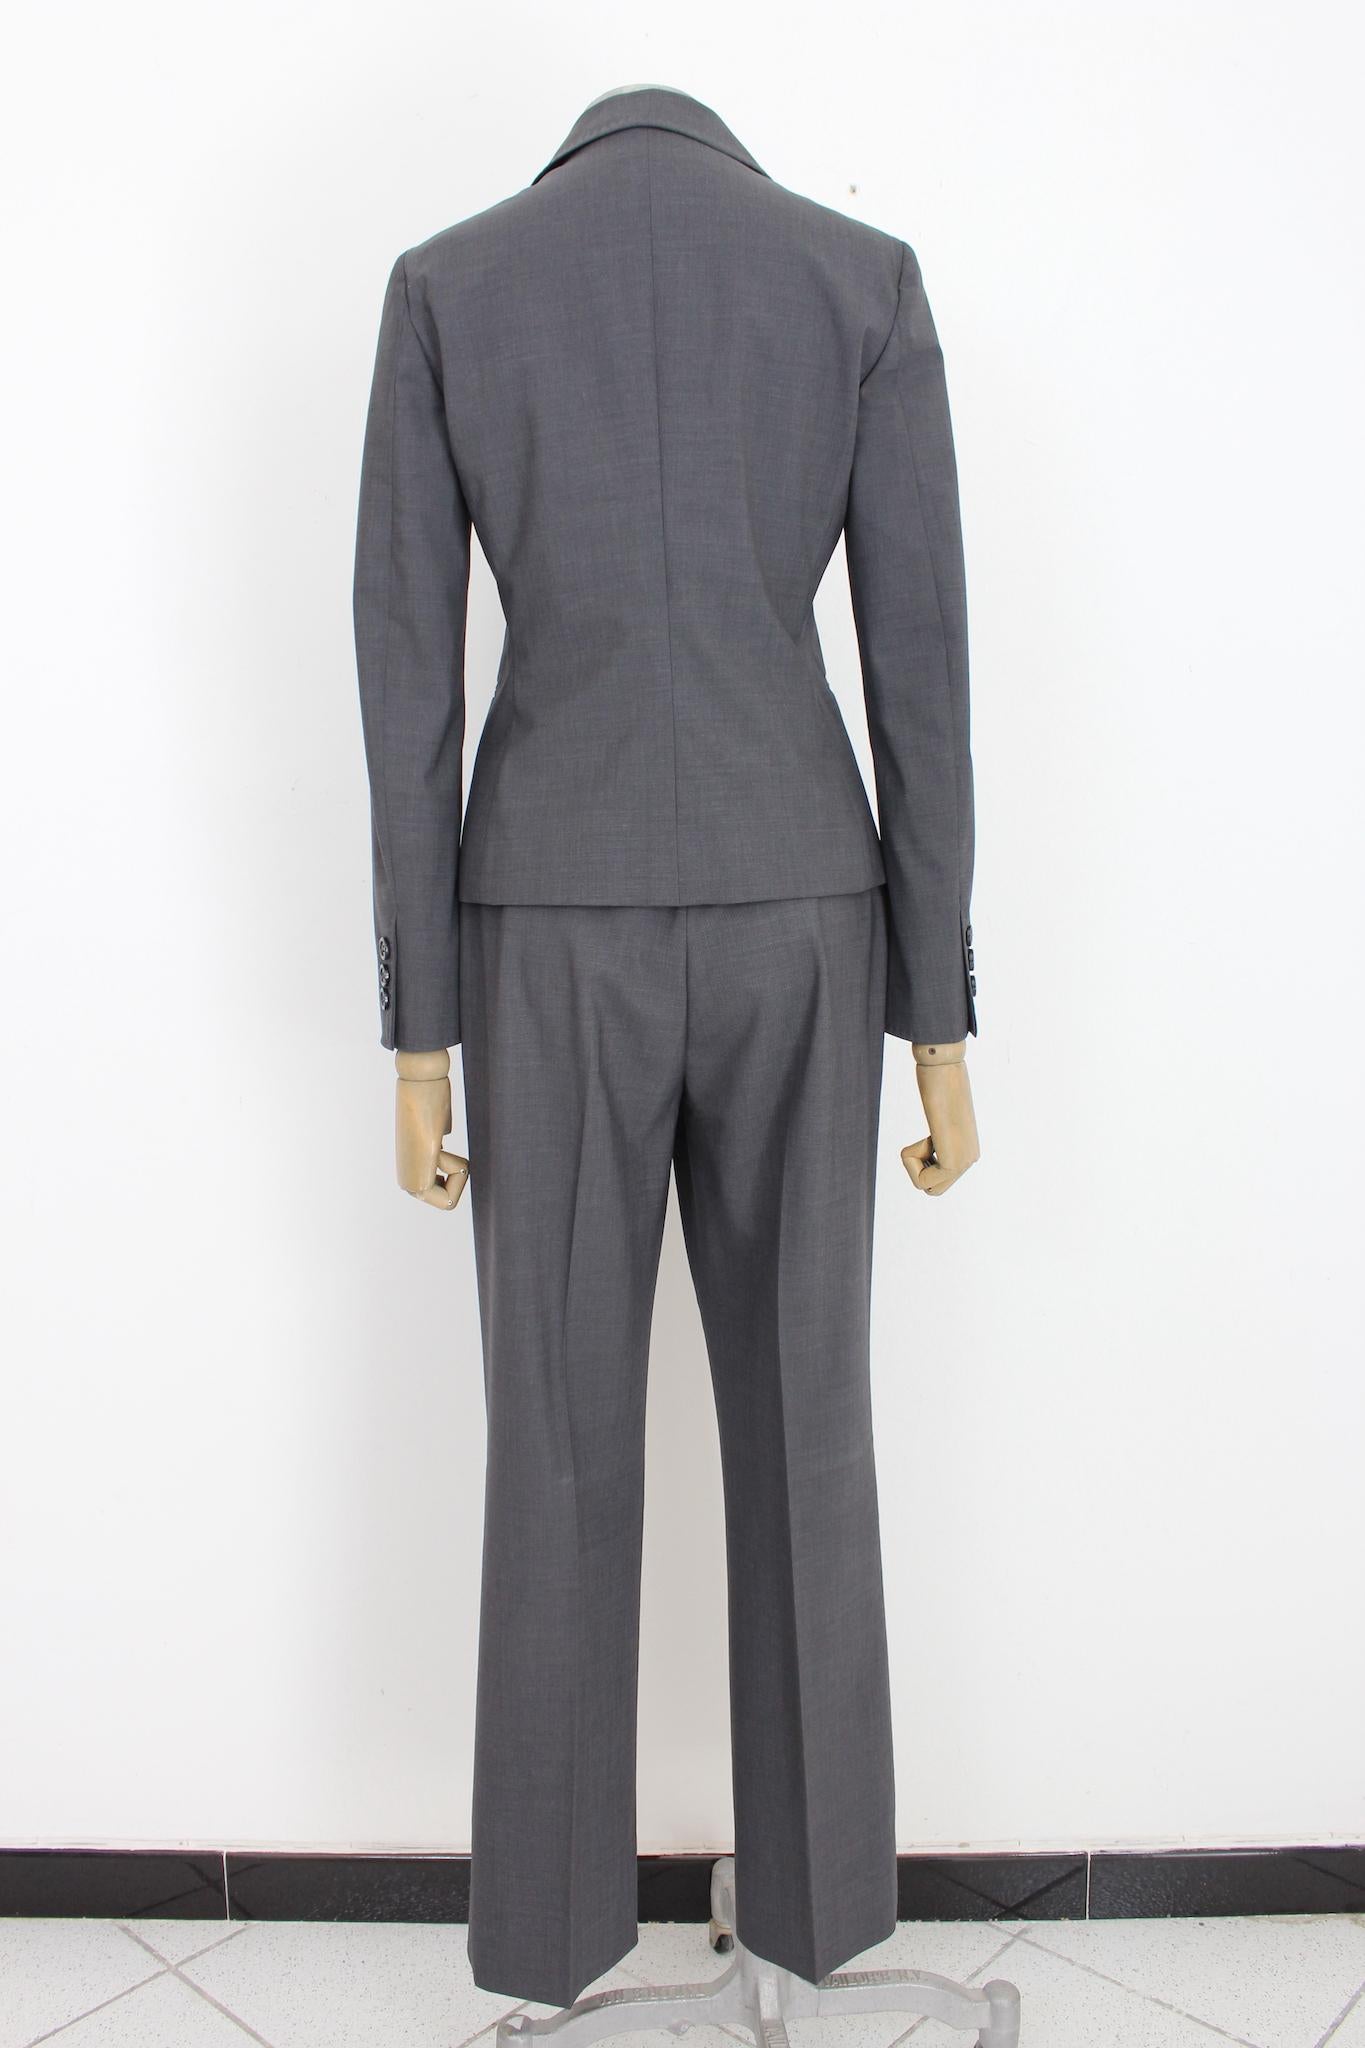 Costume pantalon classique Moschino pas cher et chic des années 2000. Veste modèle slim avec nœuds sur le col, pantalon classique à jambes droites. Couleur grise, tissu 95% laine, 5% autres fibres. Fabriquées en Italie.

Taille : 42 It 8 Us 10